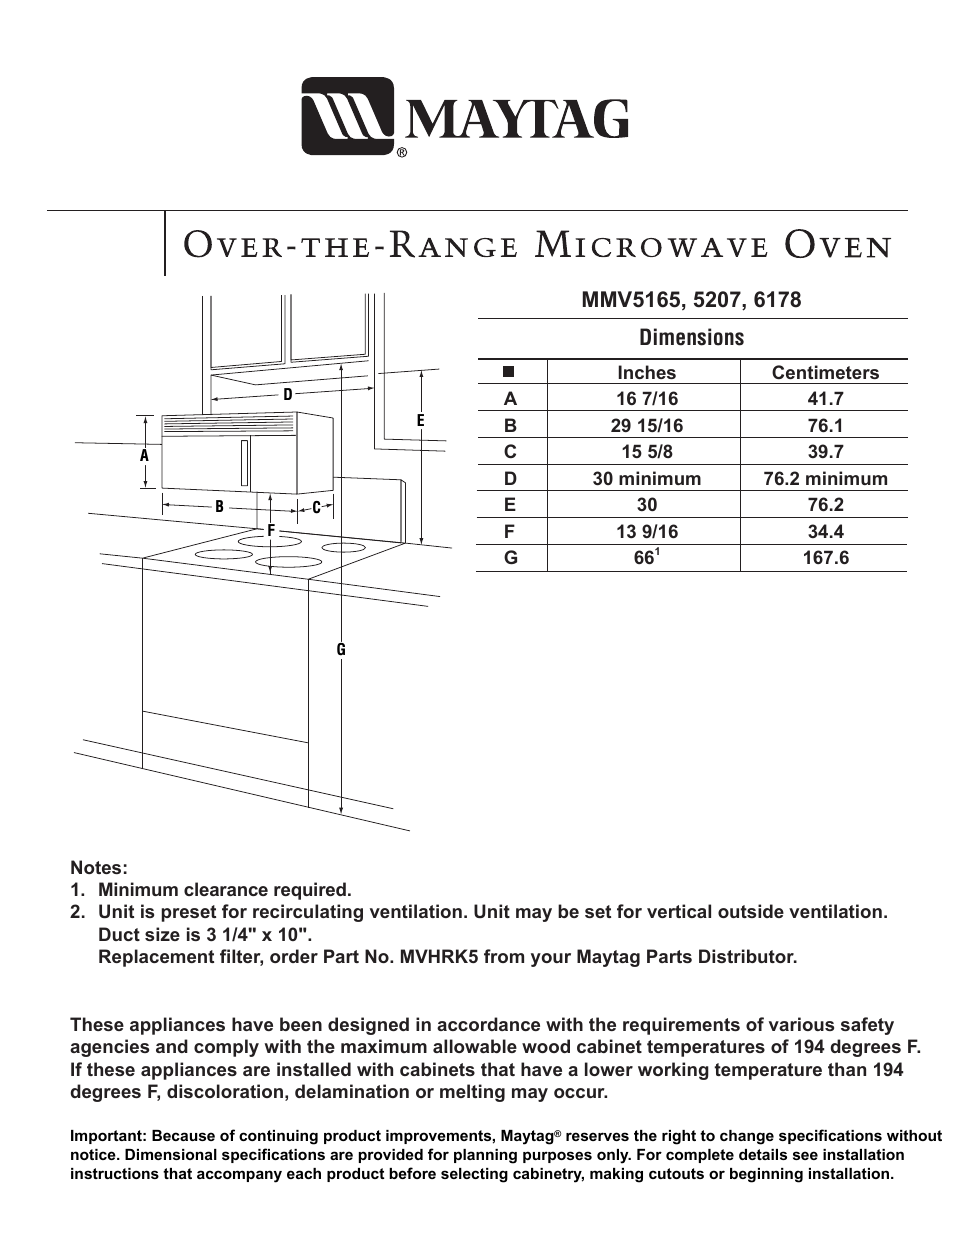 MMV5207ACW Dimension Guide